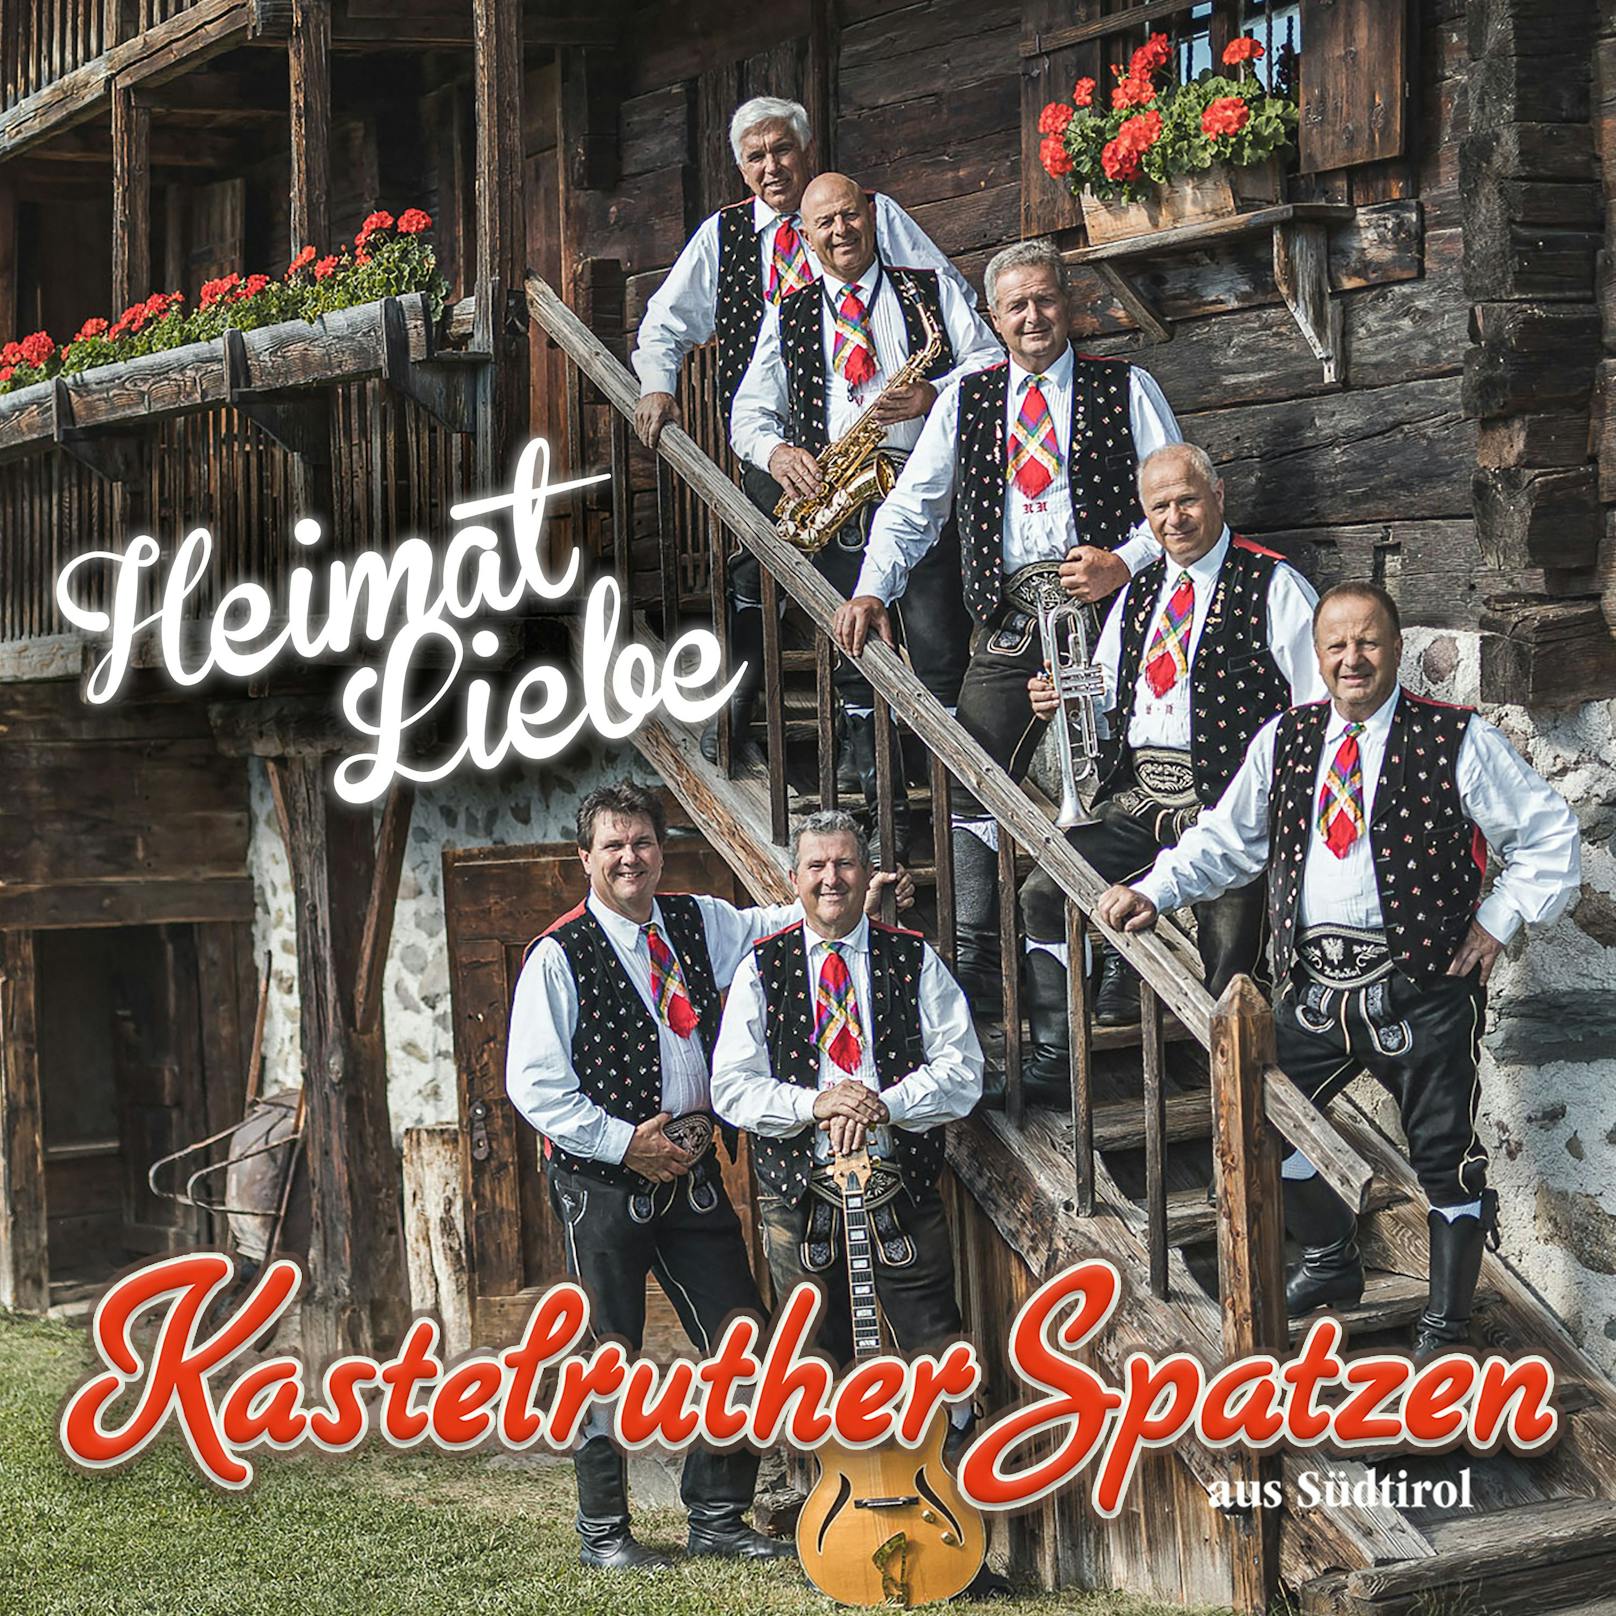 <strong>Kastelruther Spatzen "Heimat Liebe":</strong> Im Vorbote auf ihr gleichnamiges neues Studioalbum (VÖ 25. Juni) dreht sich alles um Zusammenhalt, Naturerlebnis, Gottesliebe und Geborgenheit. Der Text stammt von Wolfgang Hofer, der u.a. für <strong>Udo Jürgens</strong> "Mit 66 Jahren" geschrieben hat. <a href="https://www.youtube.com/watch?v=3g-eZozmlEw">Video gibt's auch - hier!</a>